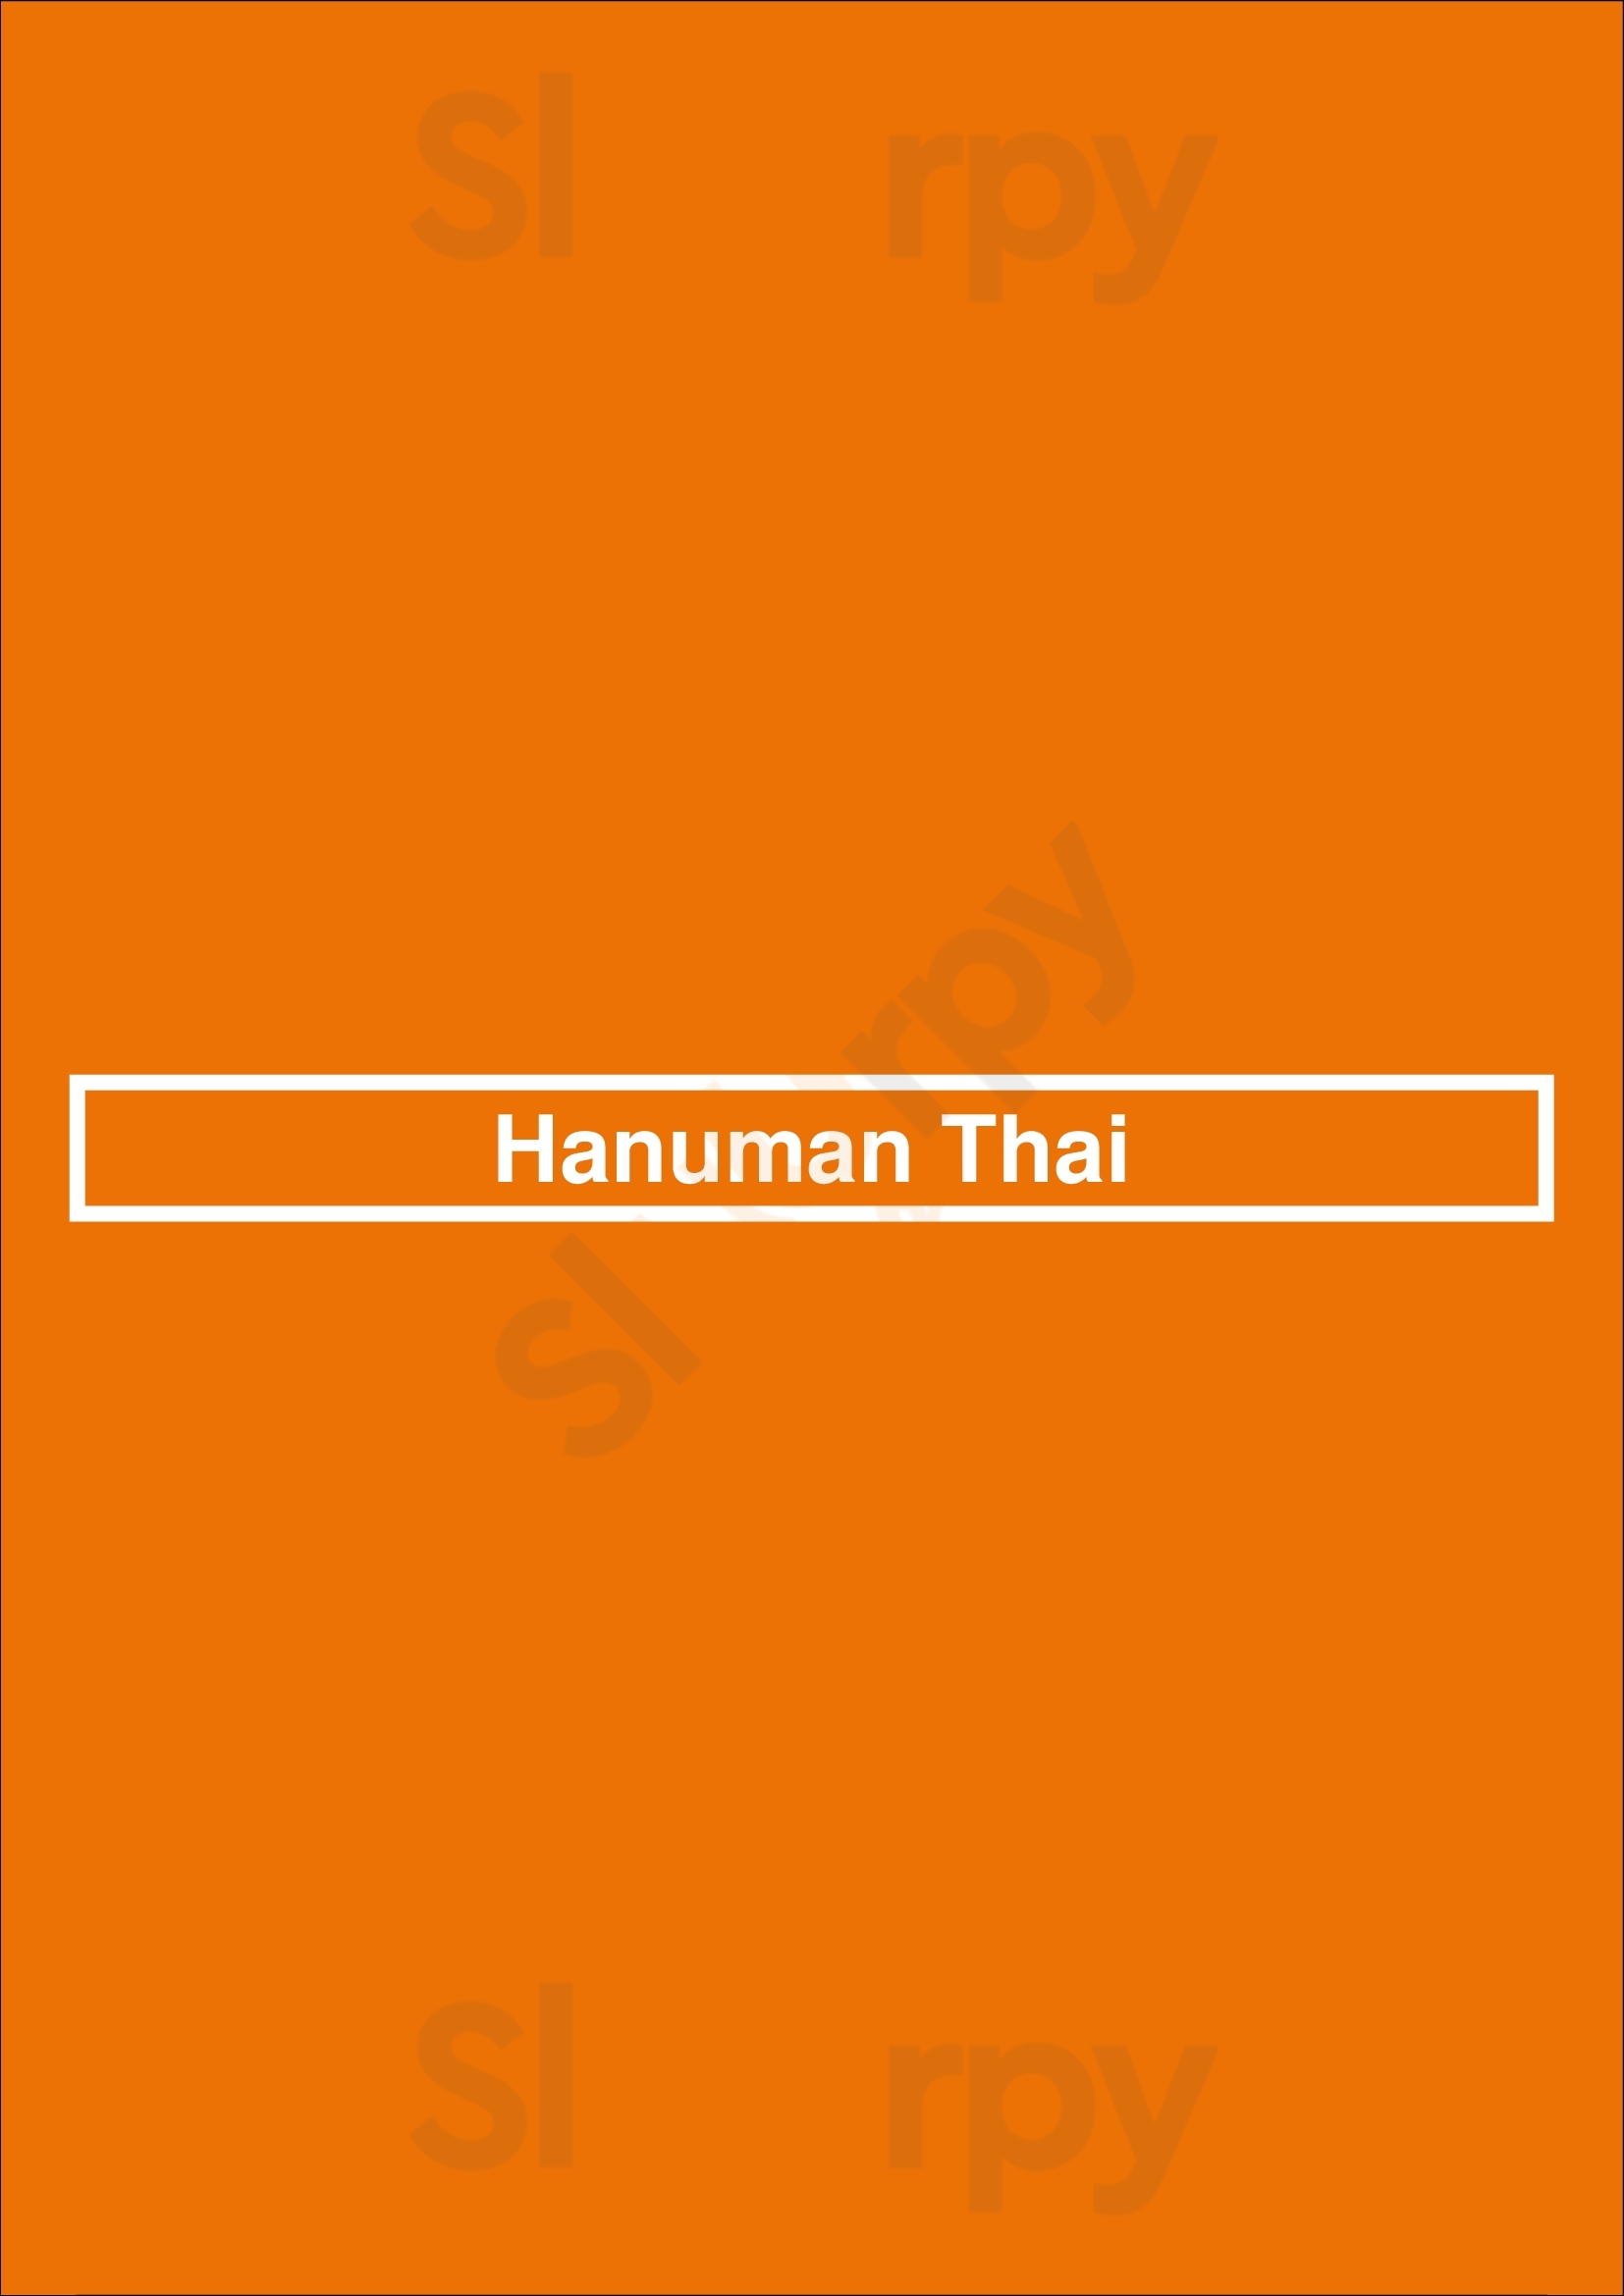 Hanuman Thai Turramurra Menu - 1